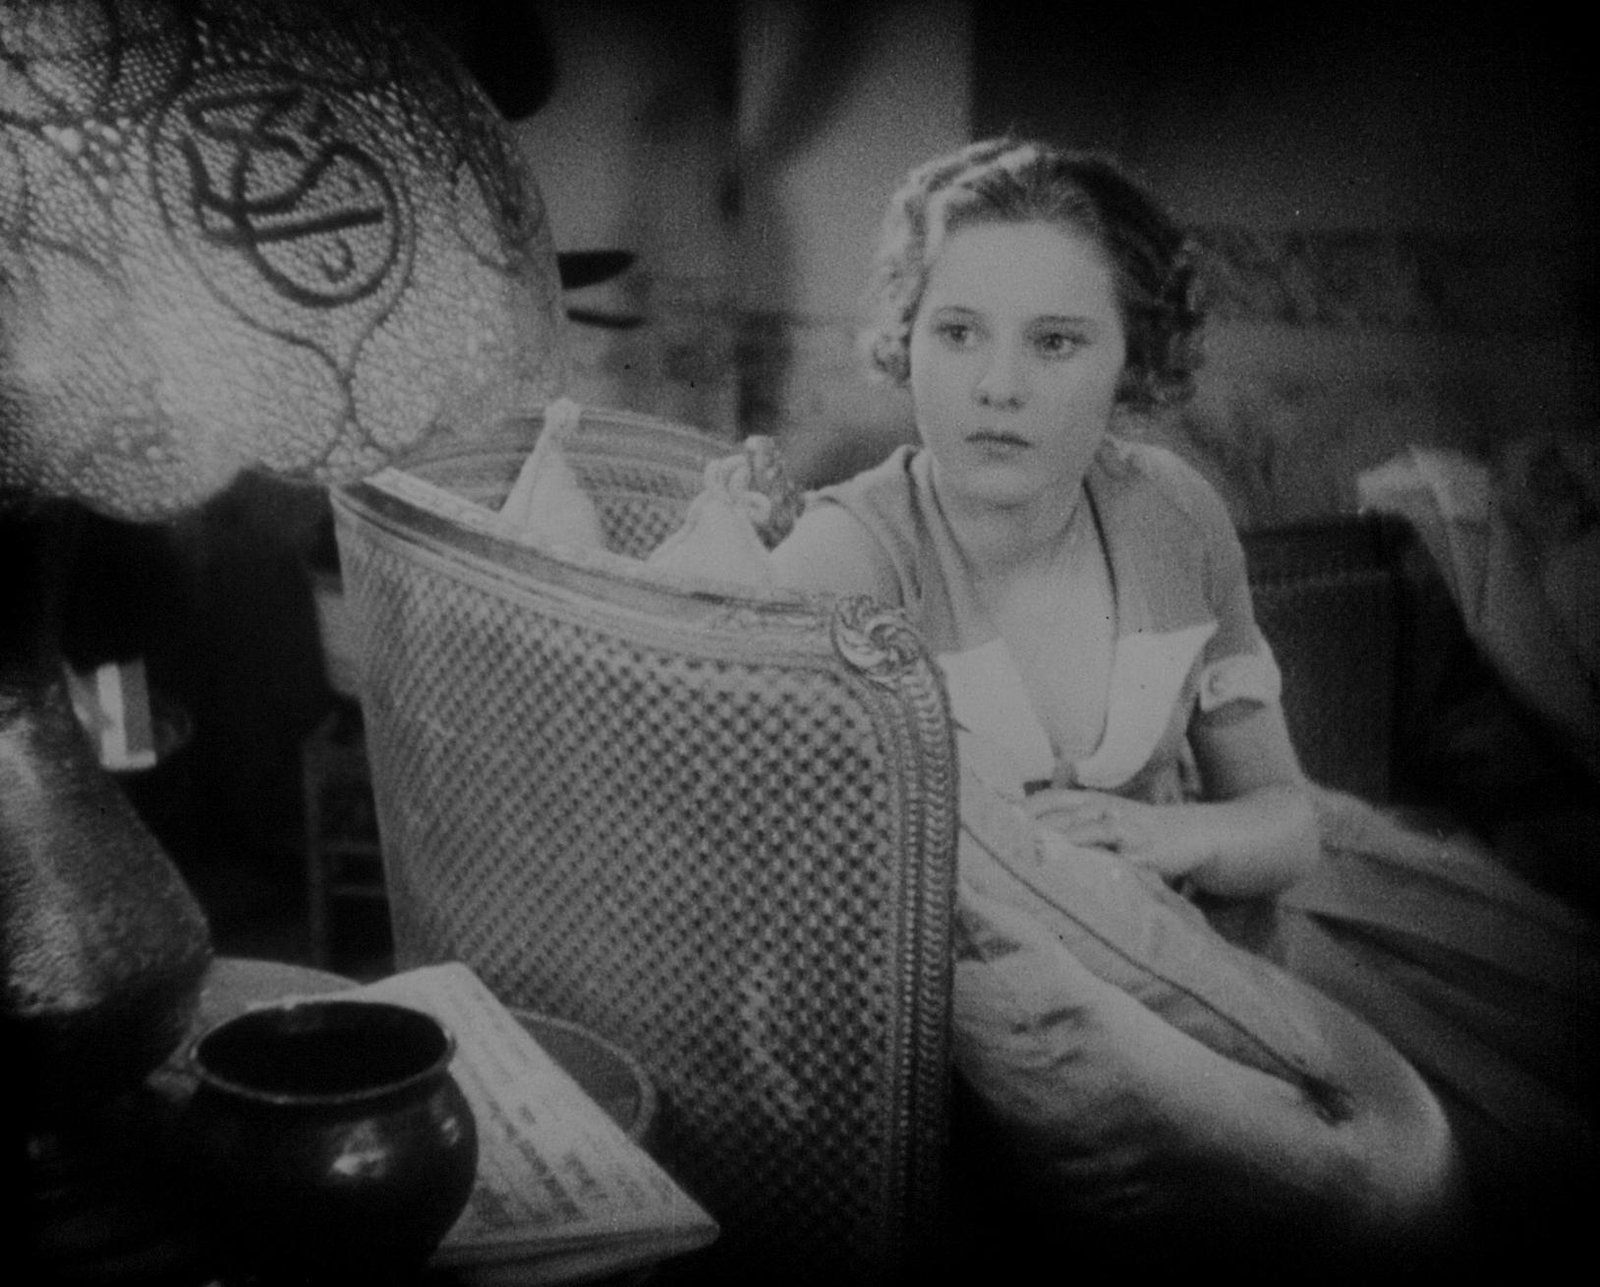 Die Nacht der grossen Liebe (1933) - Deutsche DVD-Premiere -  Ein Film von Géza von Bolváry mit Jarmila Novotna und Gustav Fröhlich - Limited Edition  (DVD)